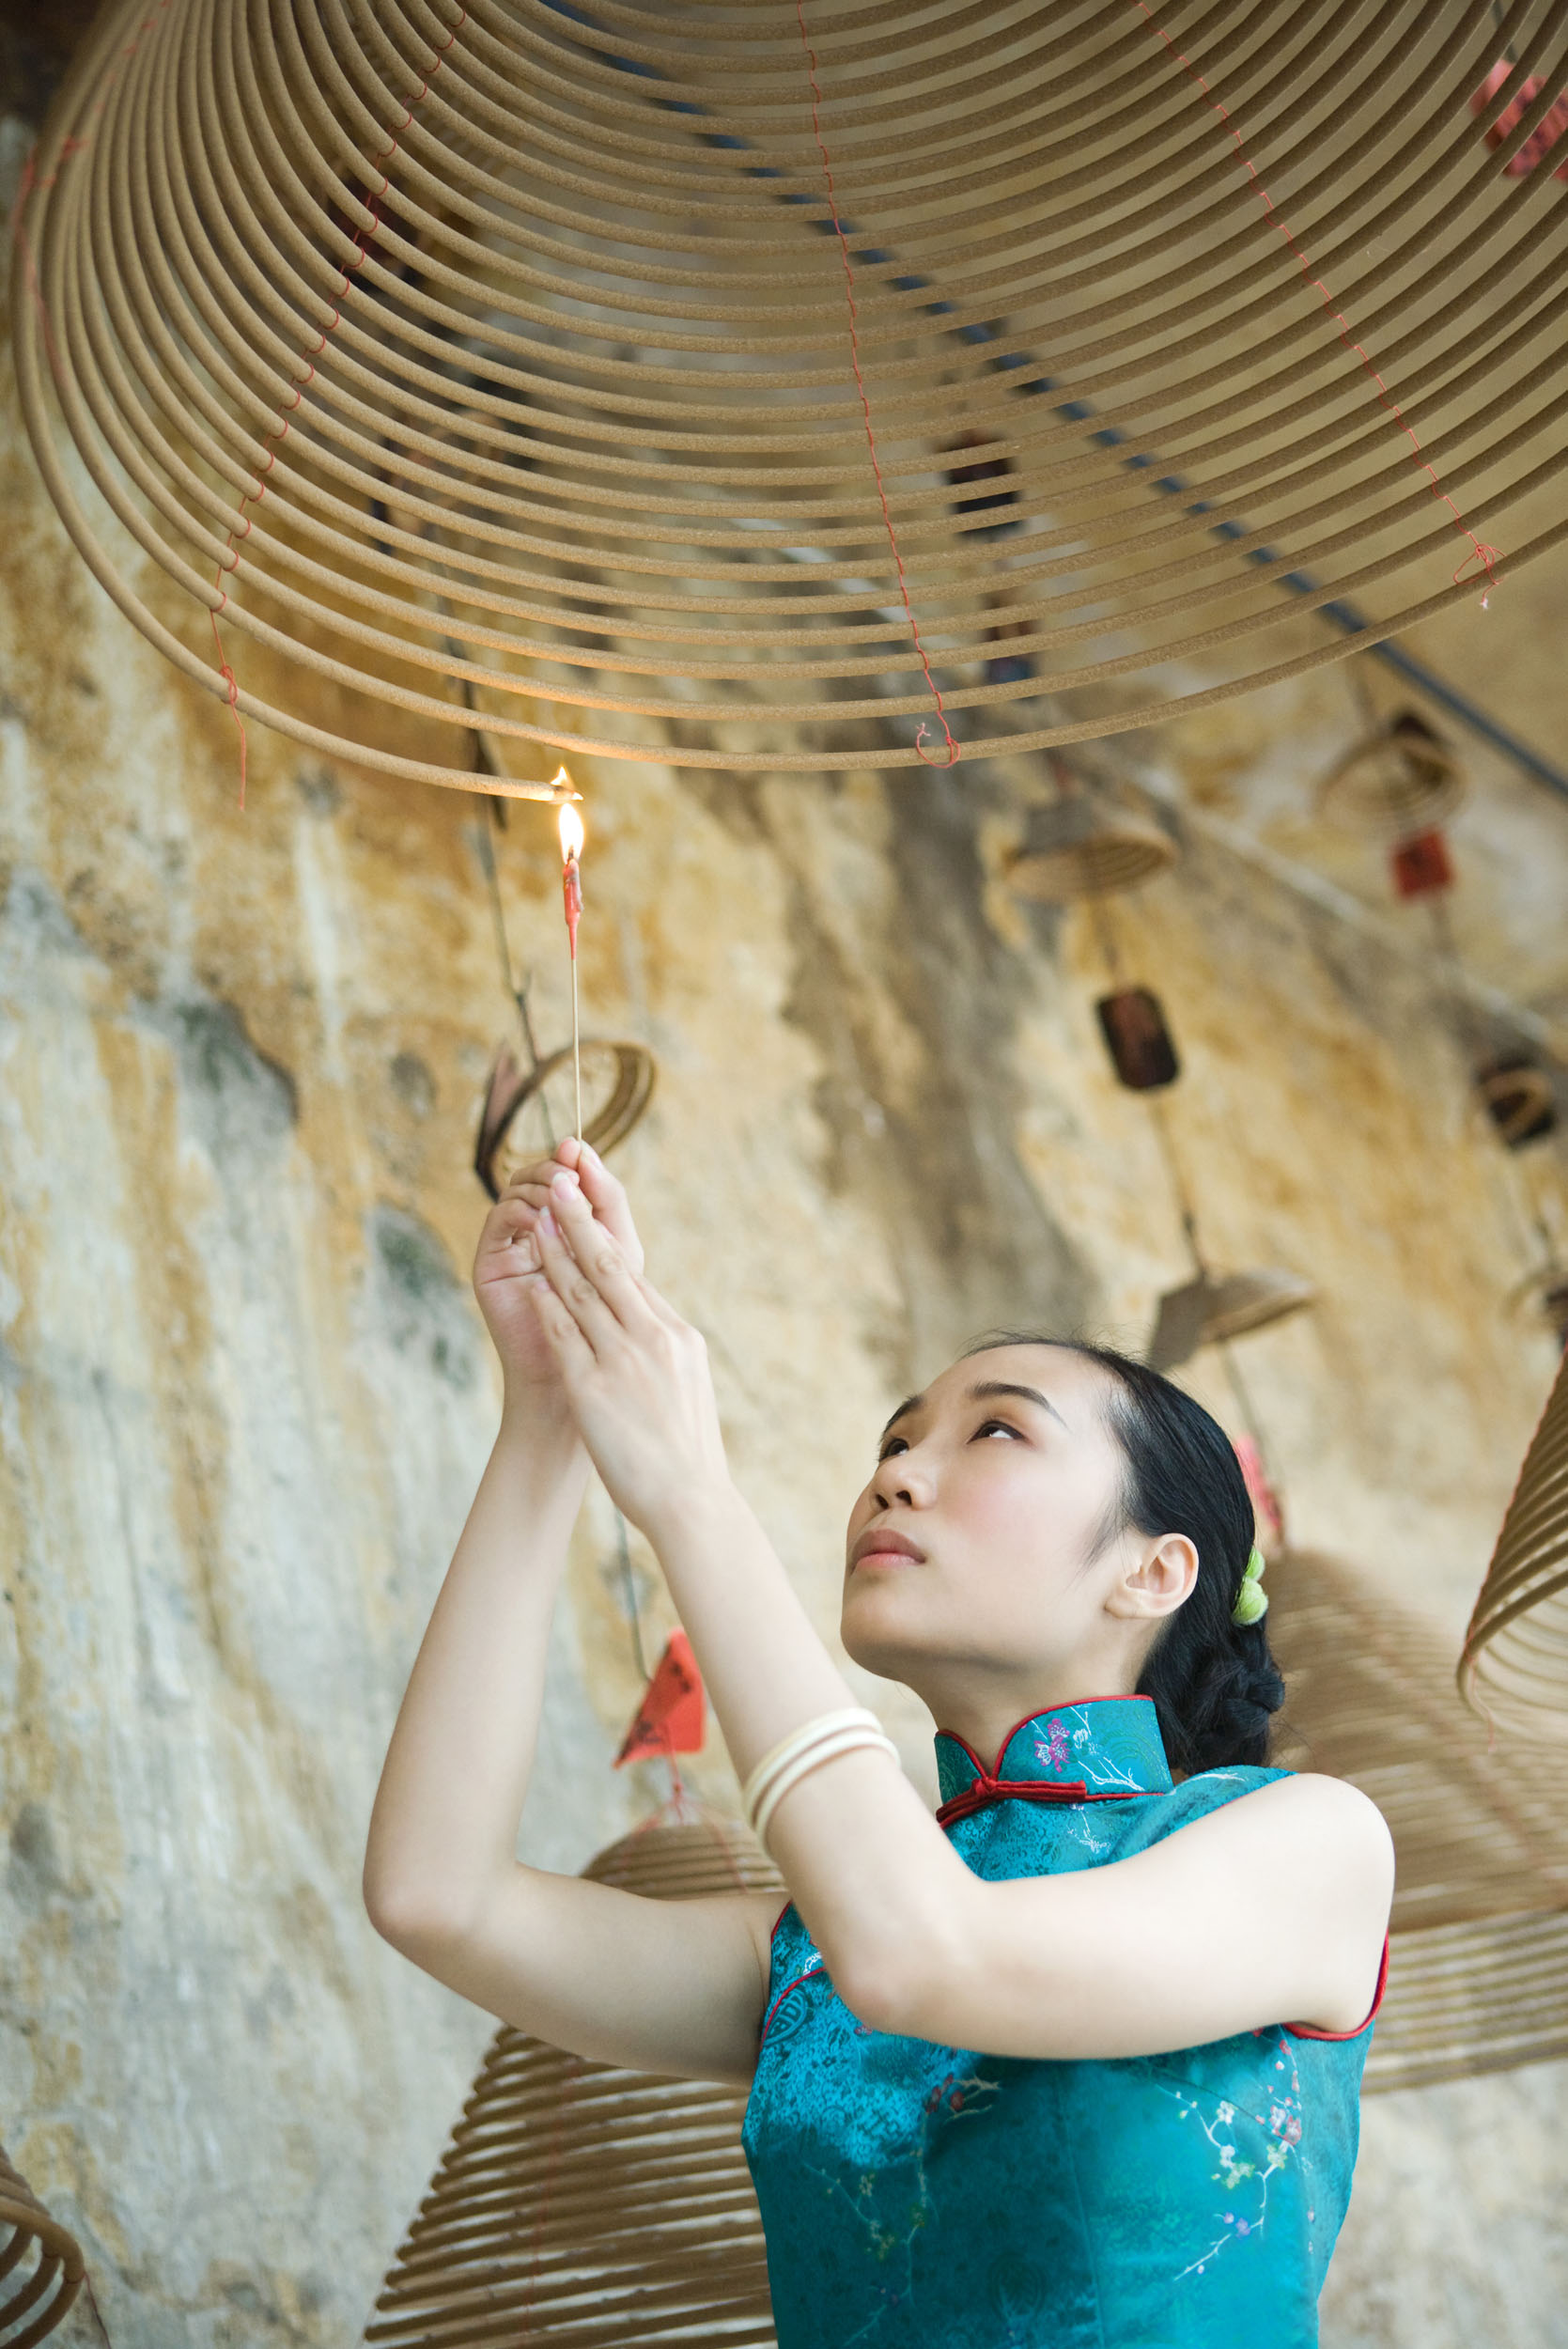 Portrait en lumière naturelle d'une femme asiatique qui allume une bobine d'encens dans un temple. Photo de portrait en contre plongée.